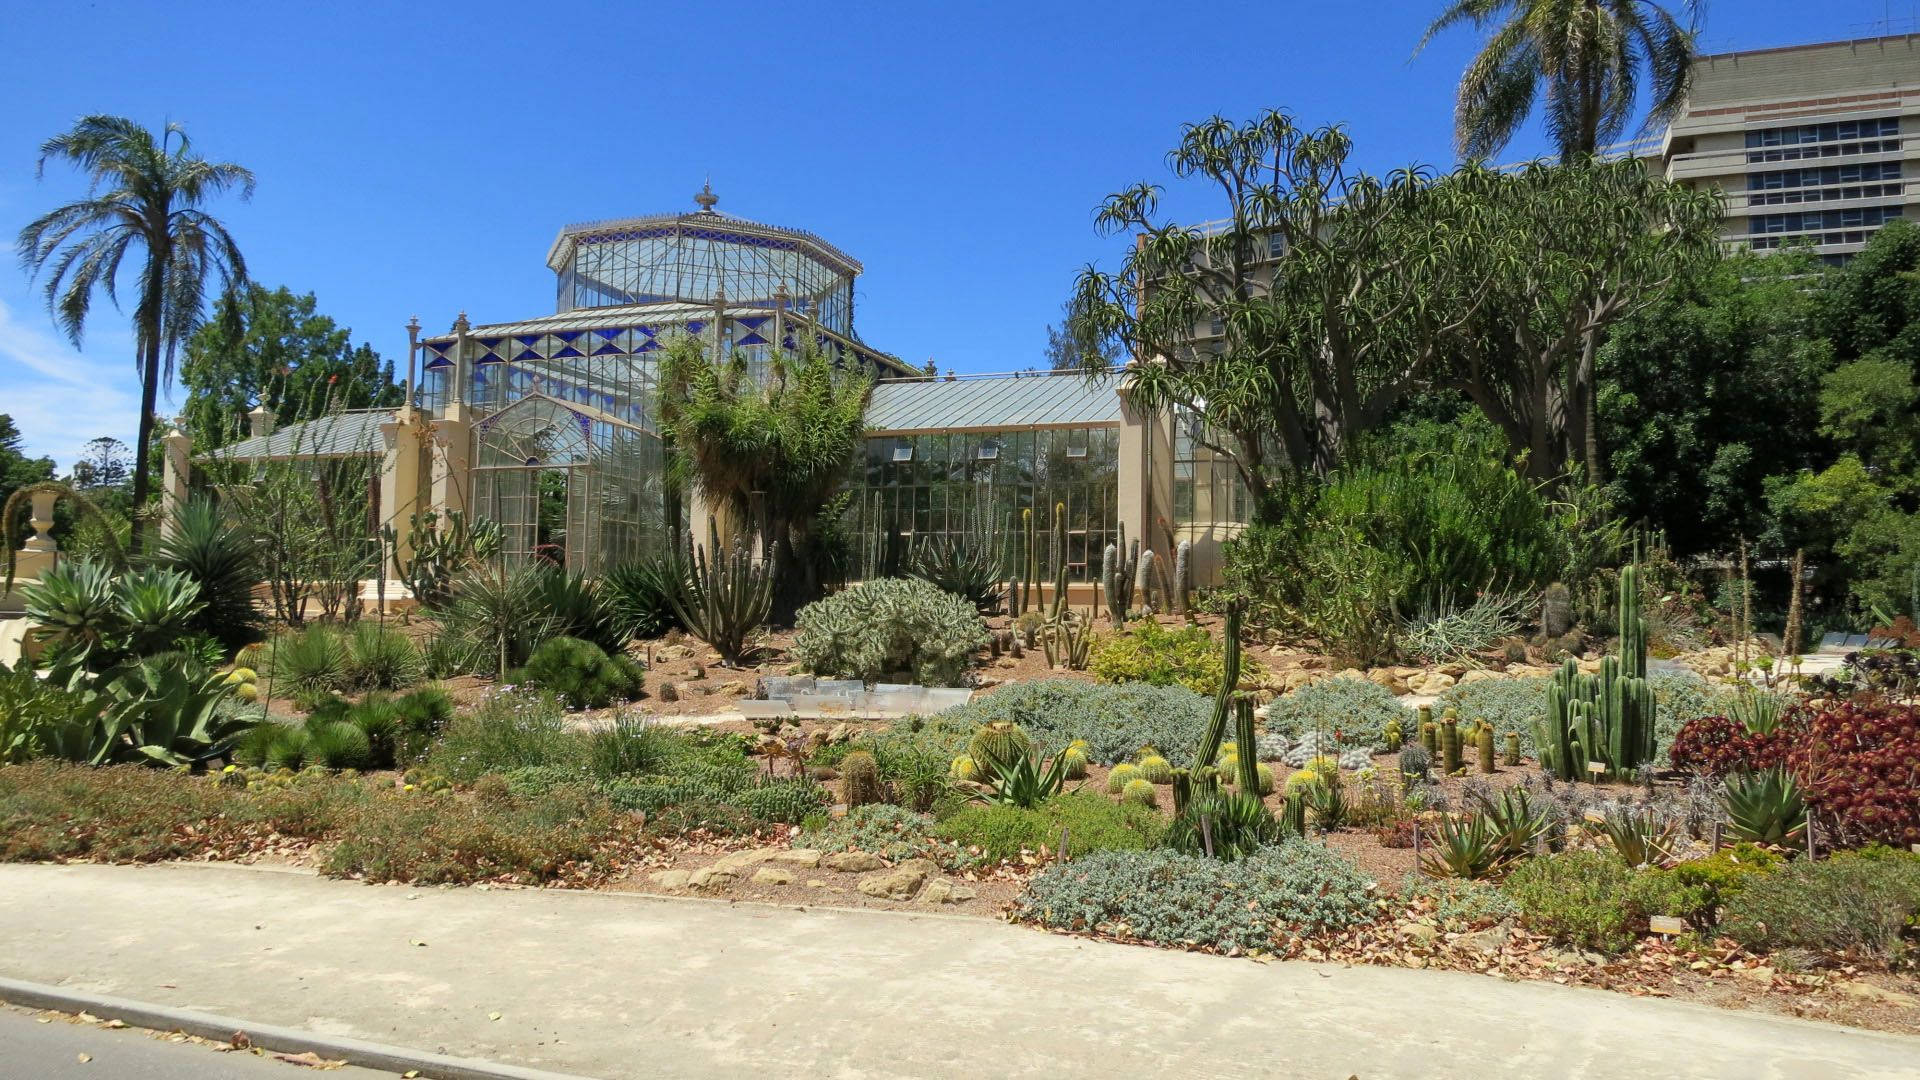 Adelaide Botanic Garden Green House Background